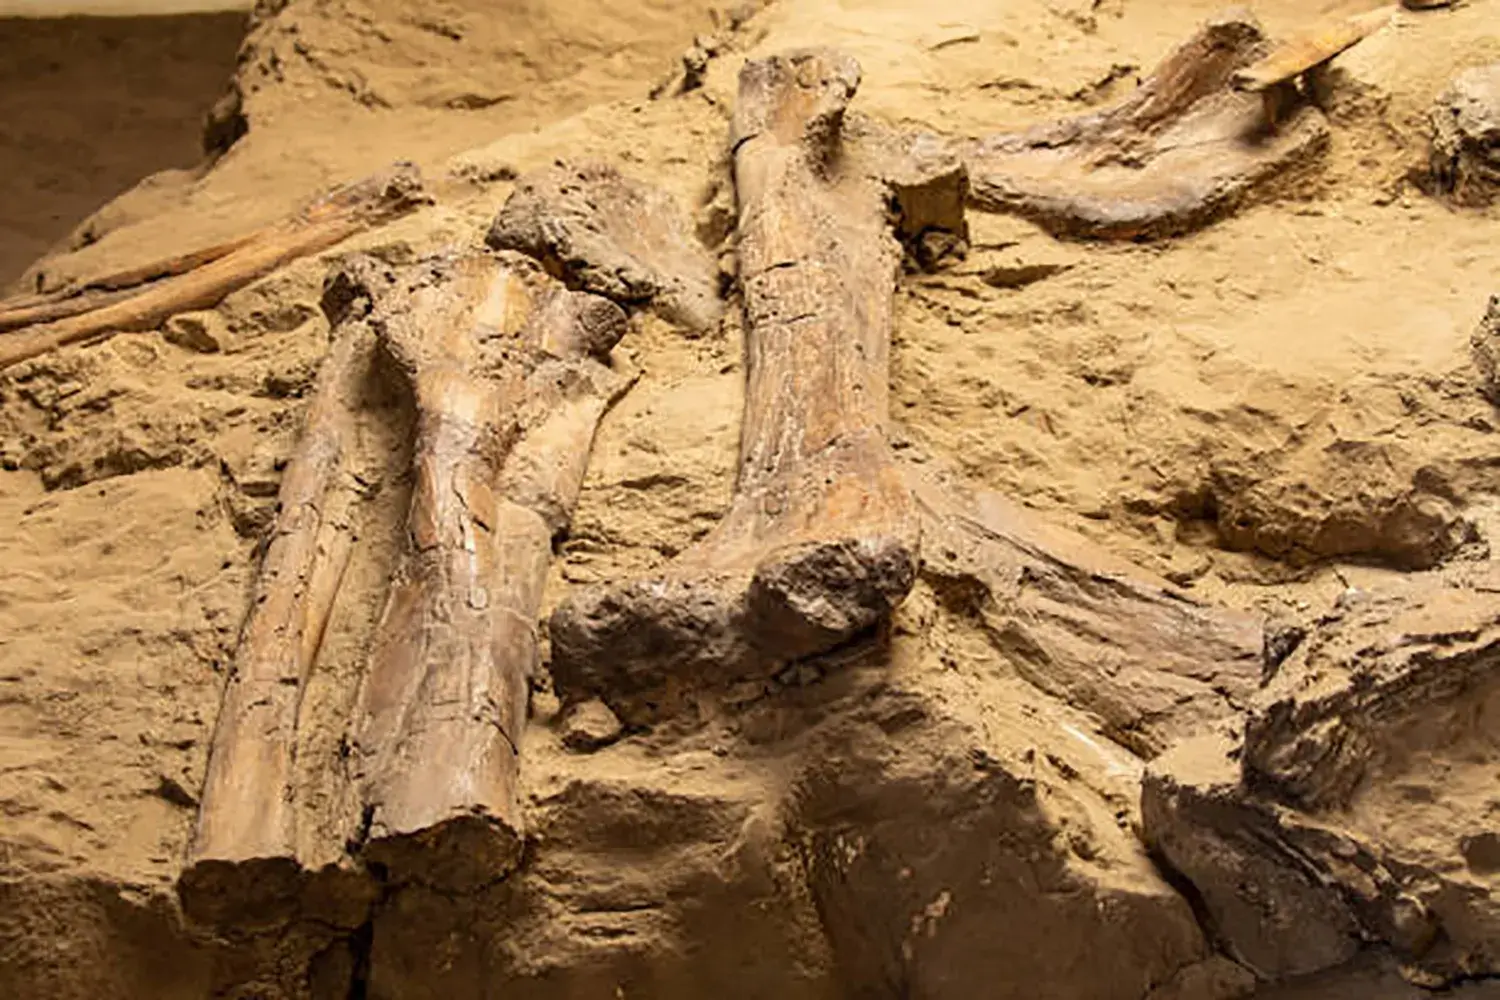 恐竜の骨の断面には木の年輪のような線がある。この線からわかるものは次のうちどれ？